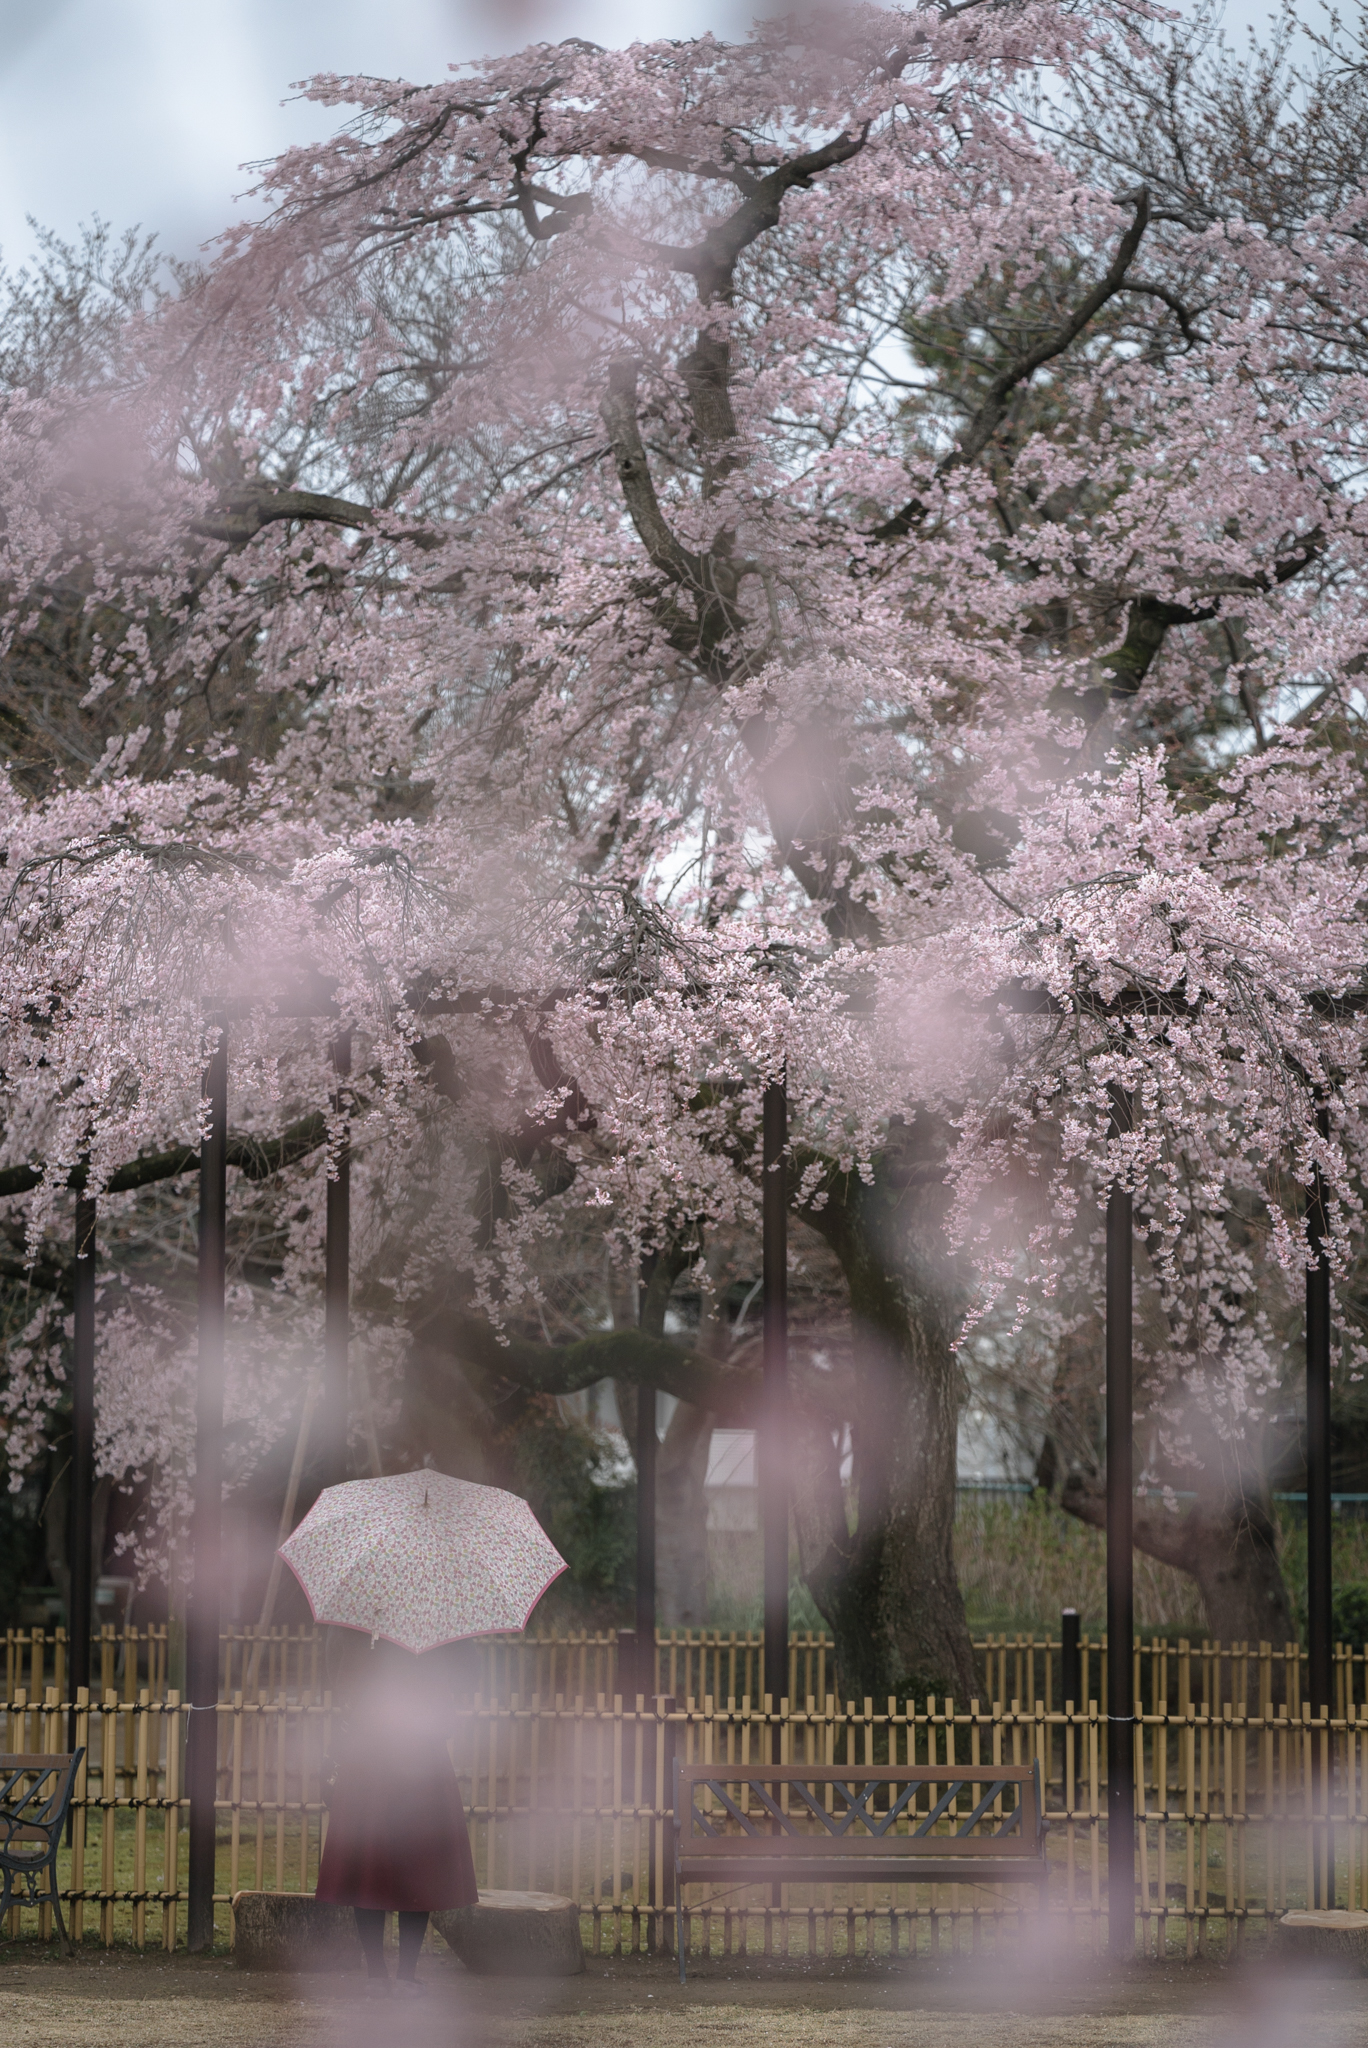 「雨のしだれ桜」 原木山妙行寺にて